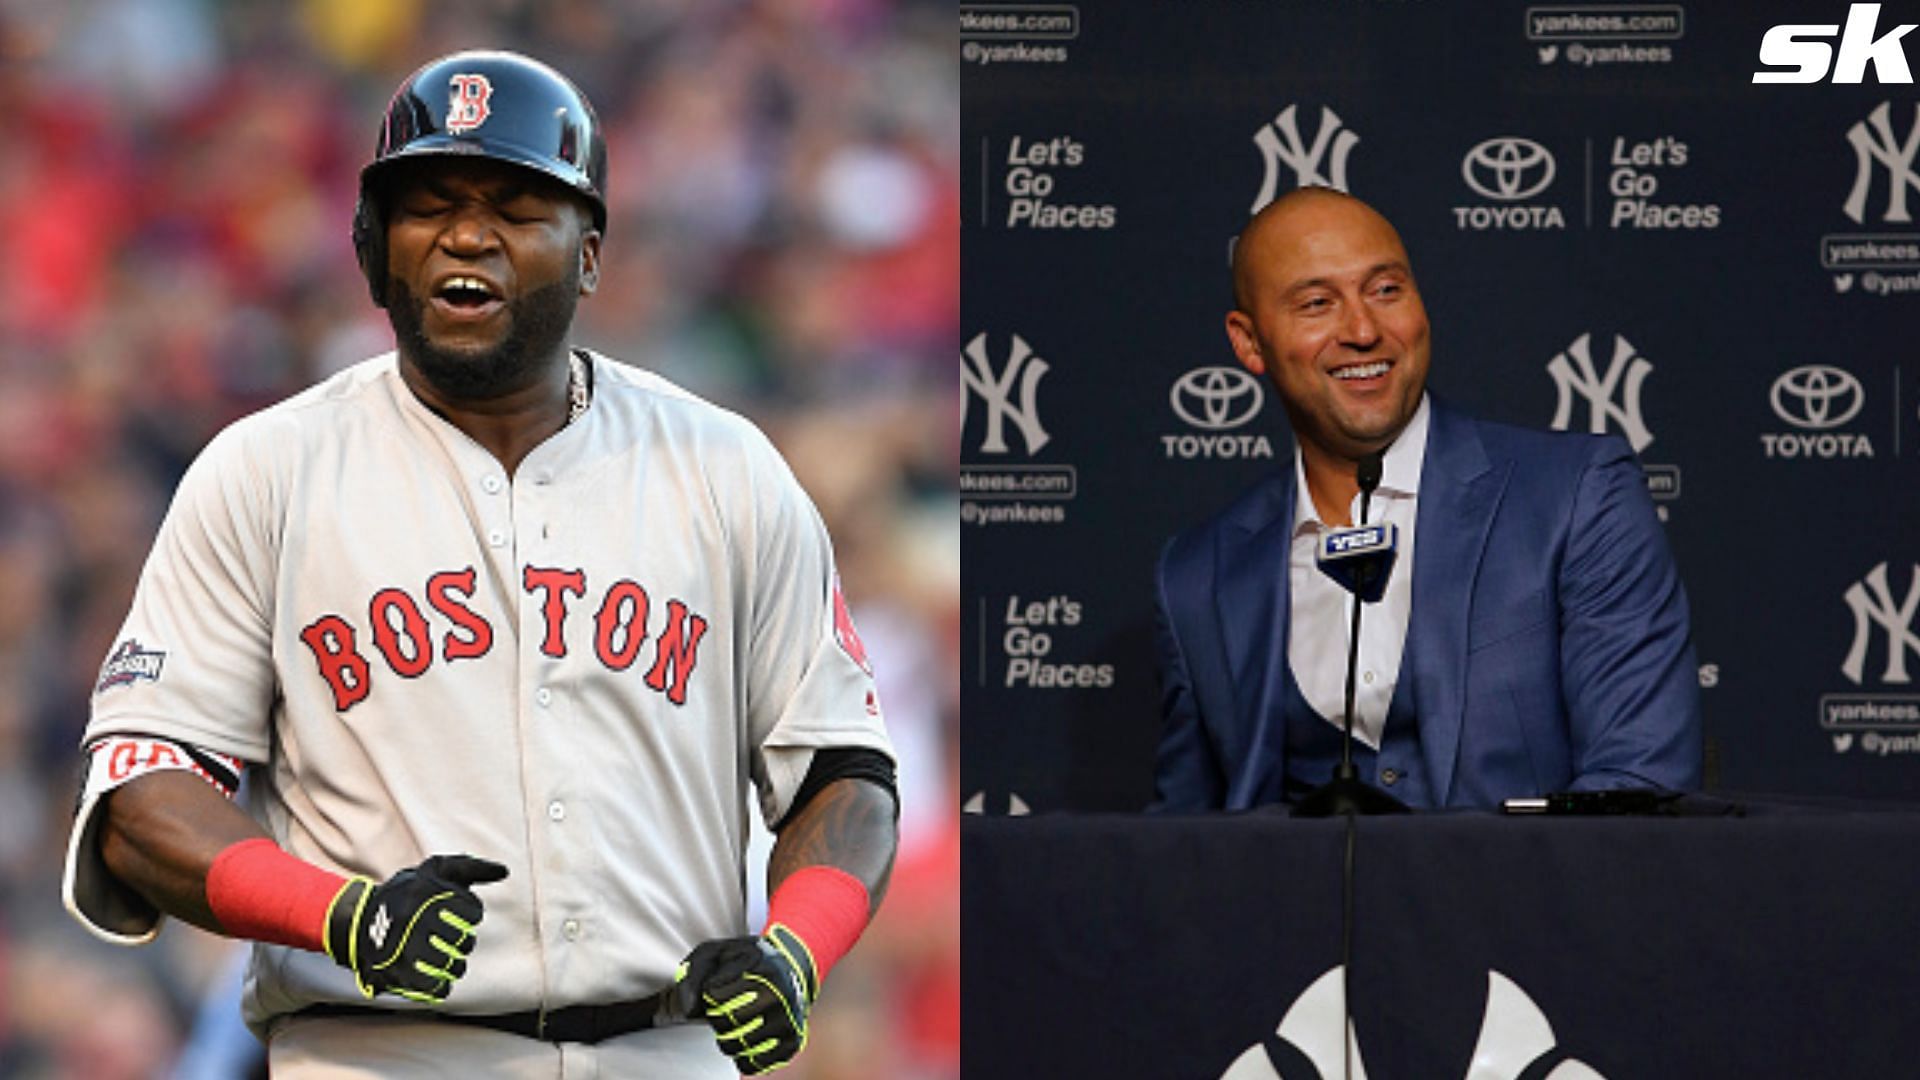 Meteorolgist' David Ortiz leaves Yankees icons Derek Jeter, Alex